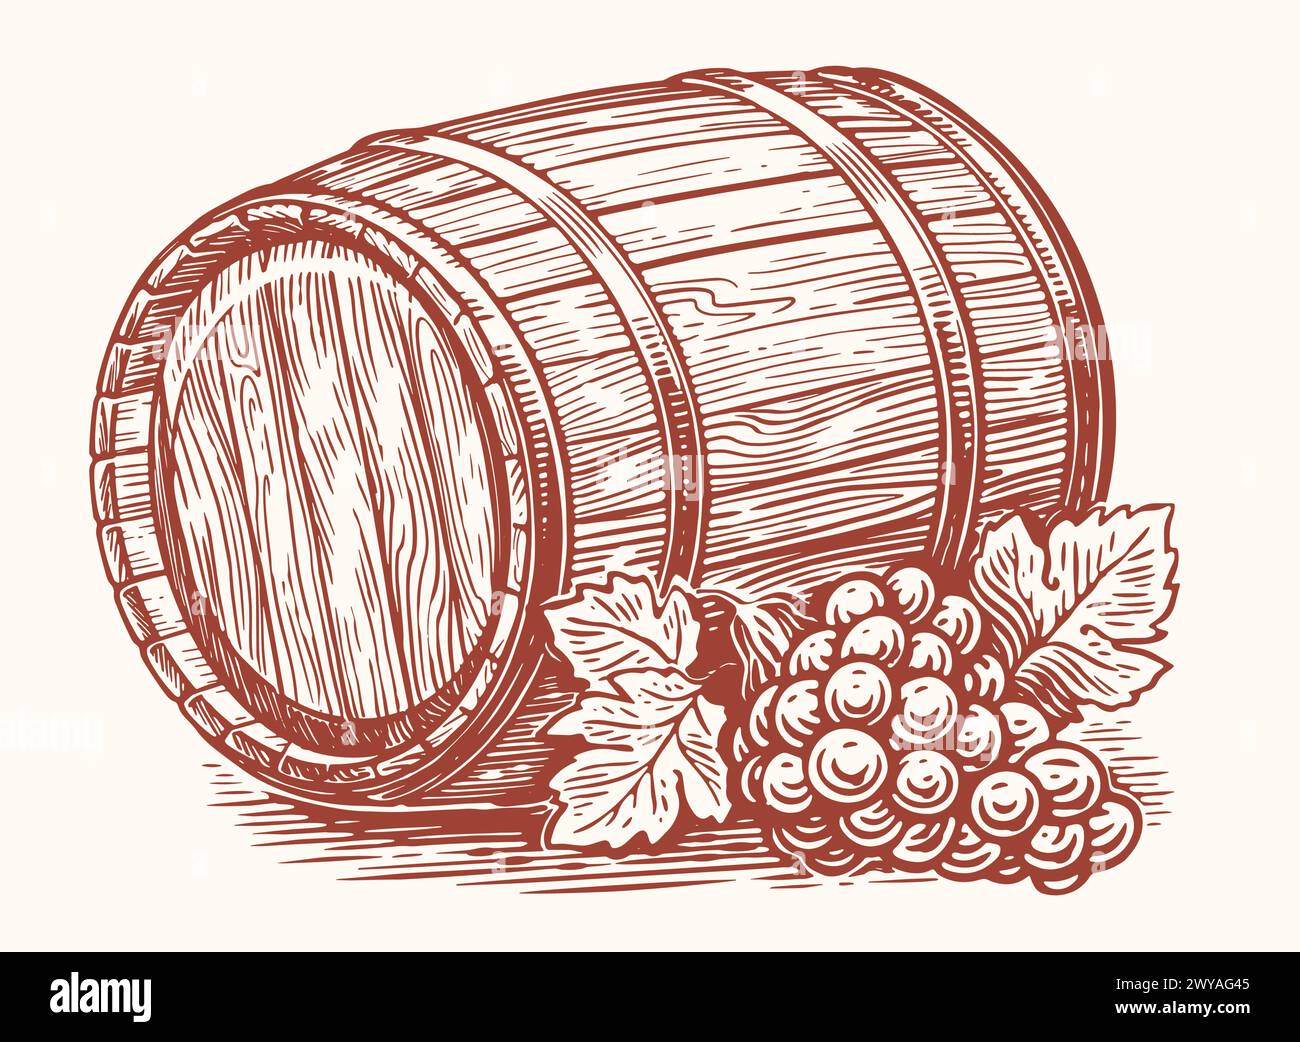 Vecchio botte di legno e uva matura con foglie. Botte di rovere di vino da bere alcolico. Illustrazione del vettore di schizzo Illustrazione Vettoriale